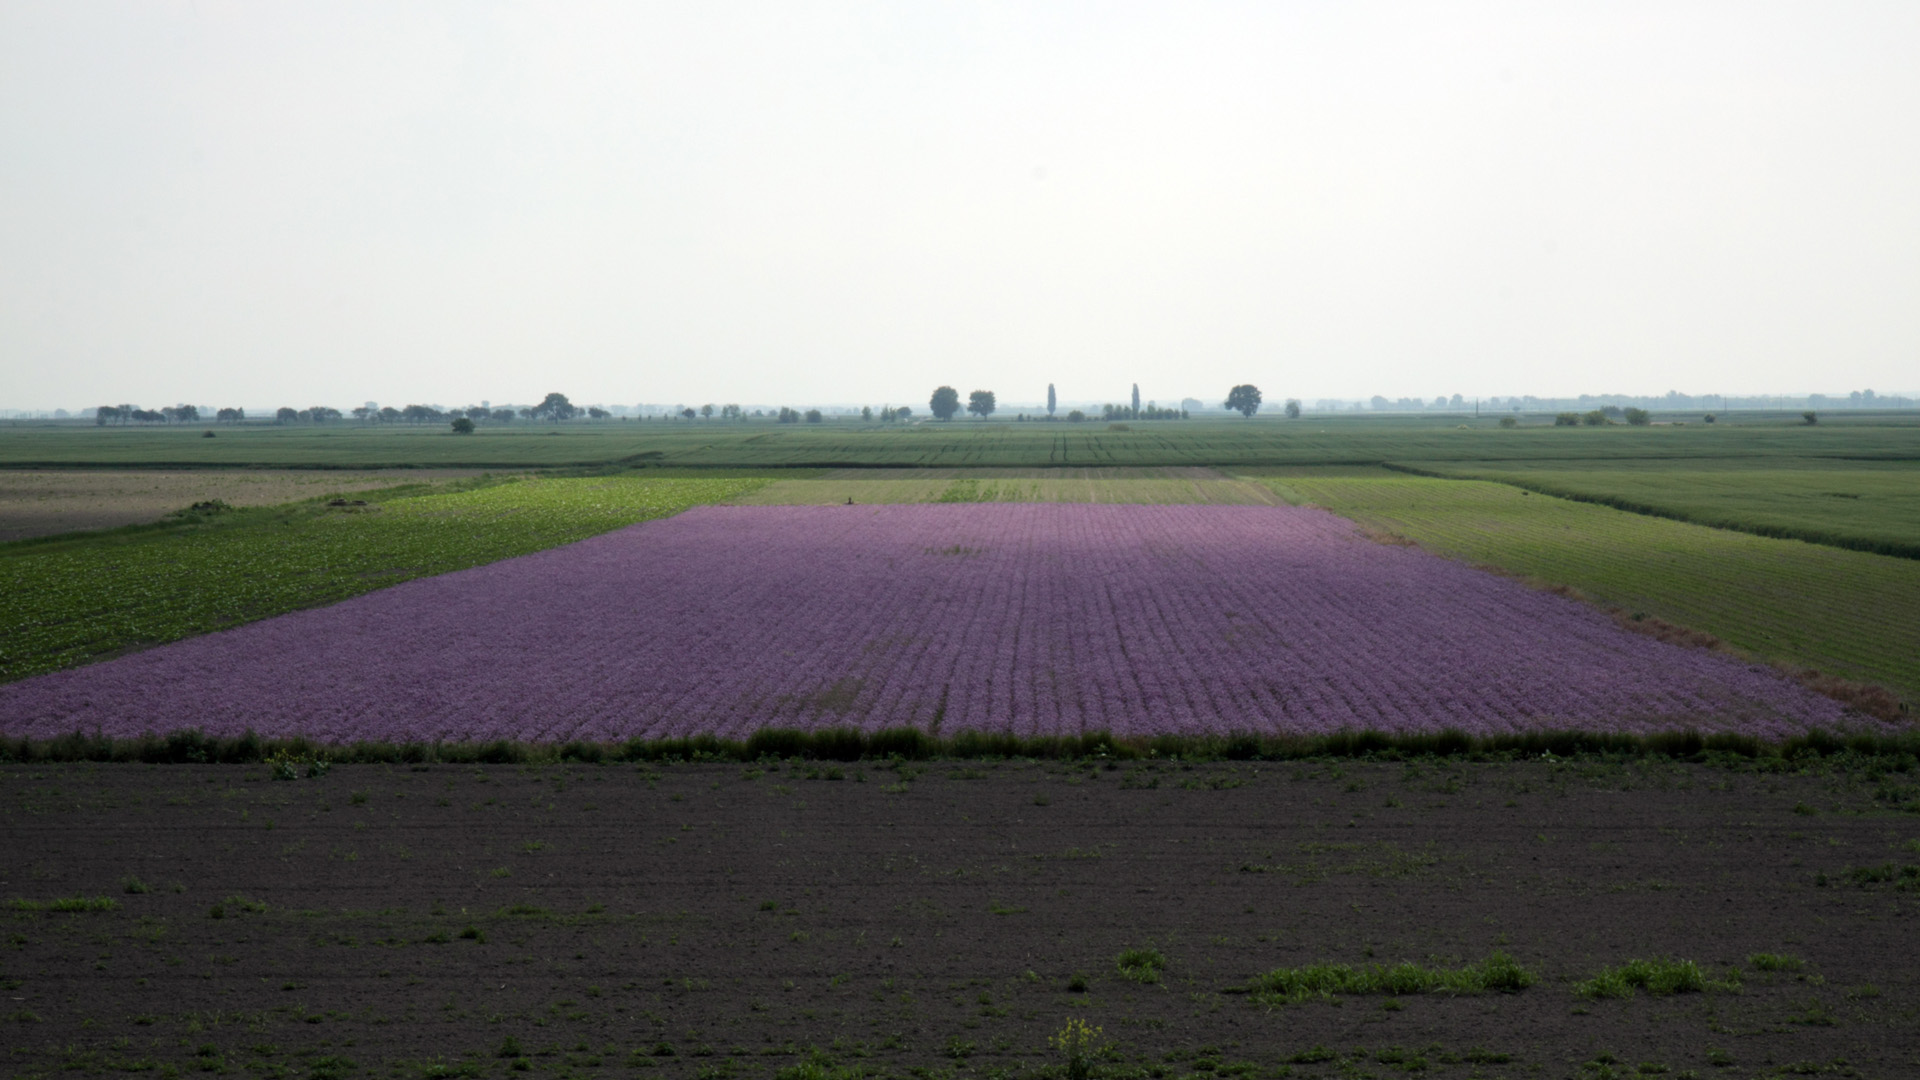 Lavendelfeld in Ungarn | picture alliance / Reinhard Koes